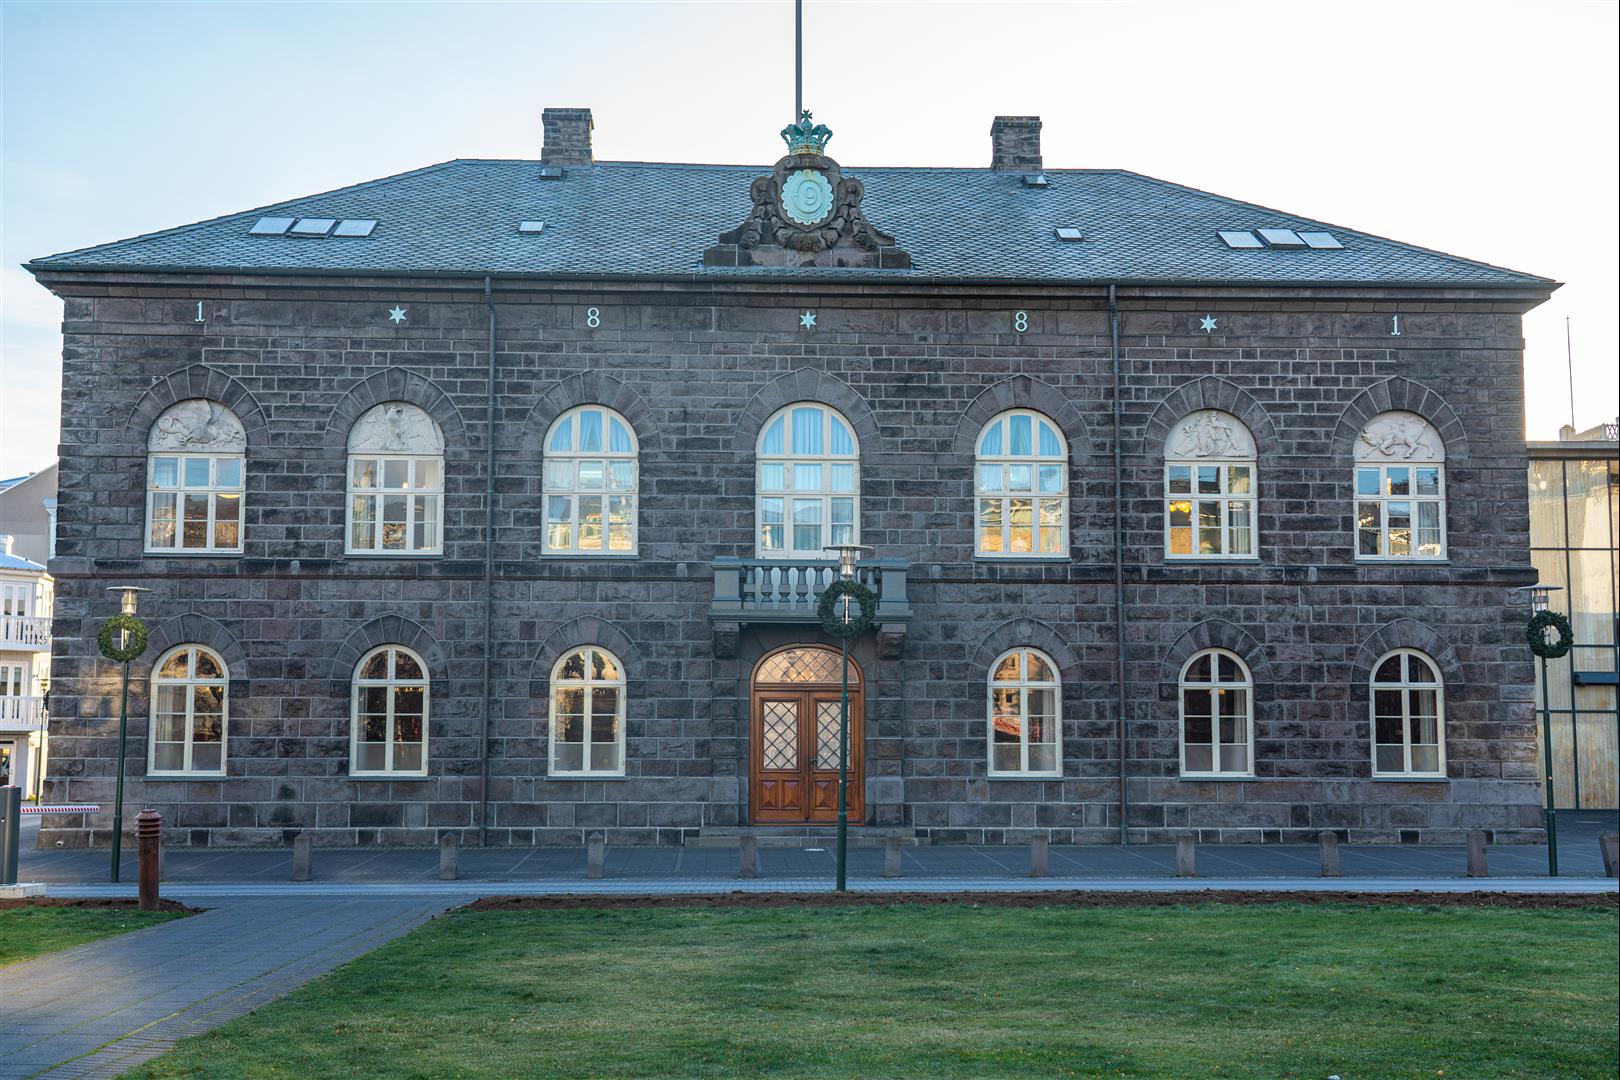 [冰島/西南] 雷克雅維克景點 - 哈帕音樂廳、哈姆格林大教堂 、珍珠樓 、太陽者航海號、國會樓、市政廳 、羊肉熱狗